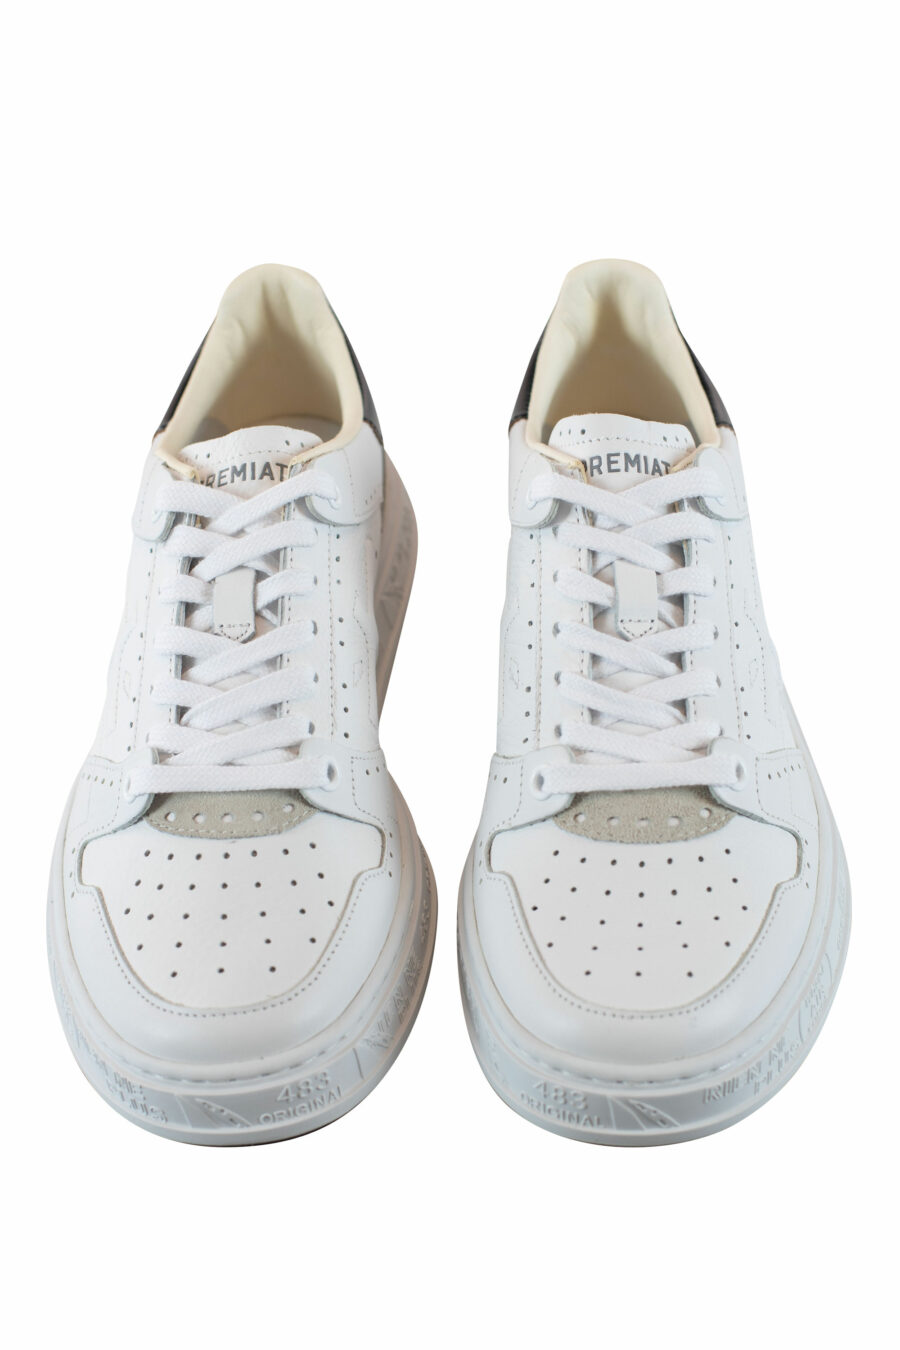 Zapatillas blancas con detalle negro "quinn 6299" - IMG 4323